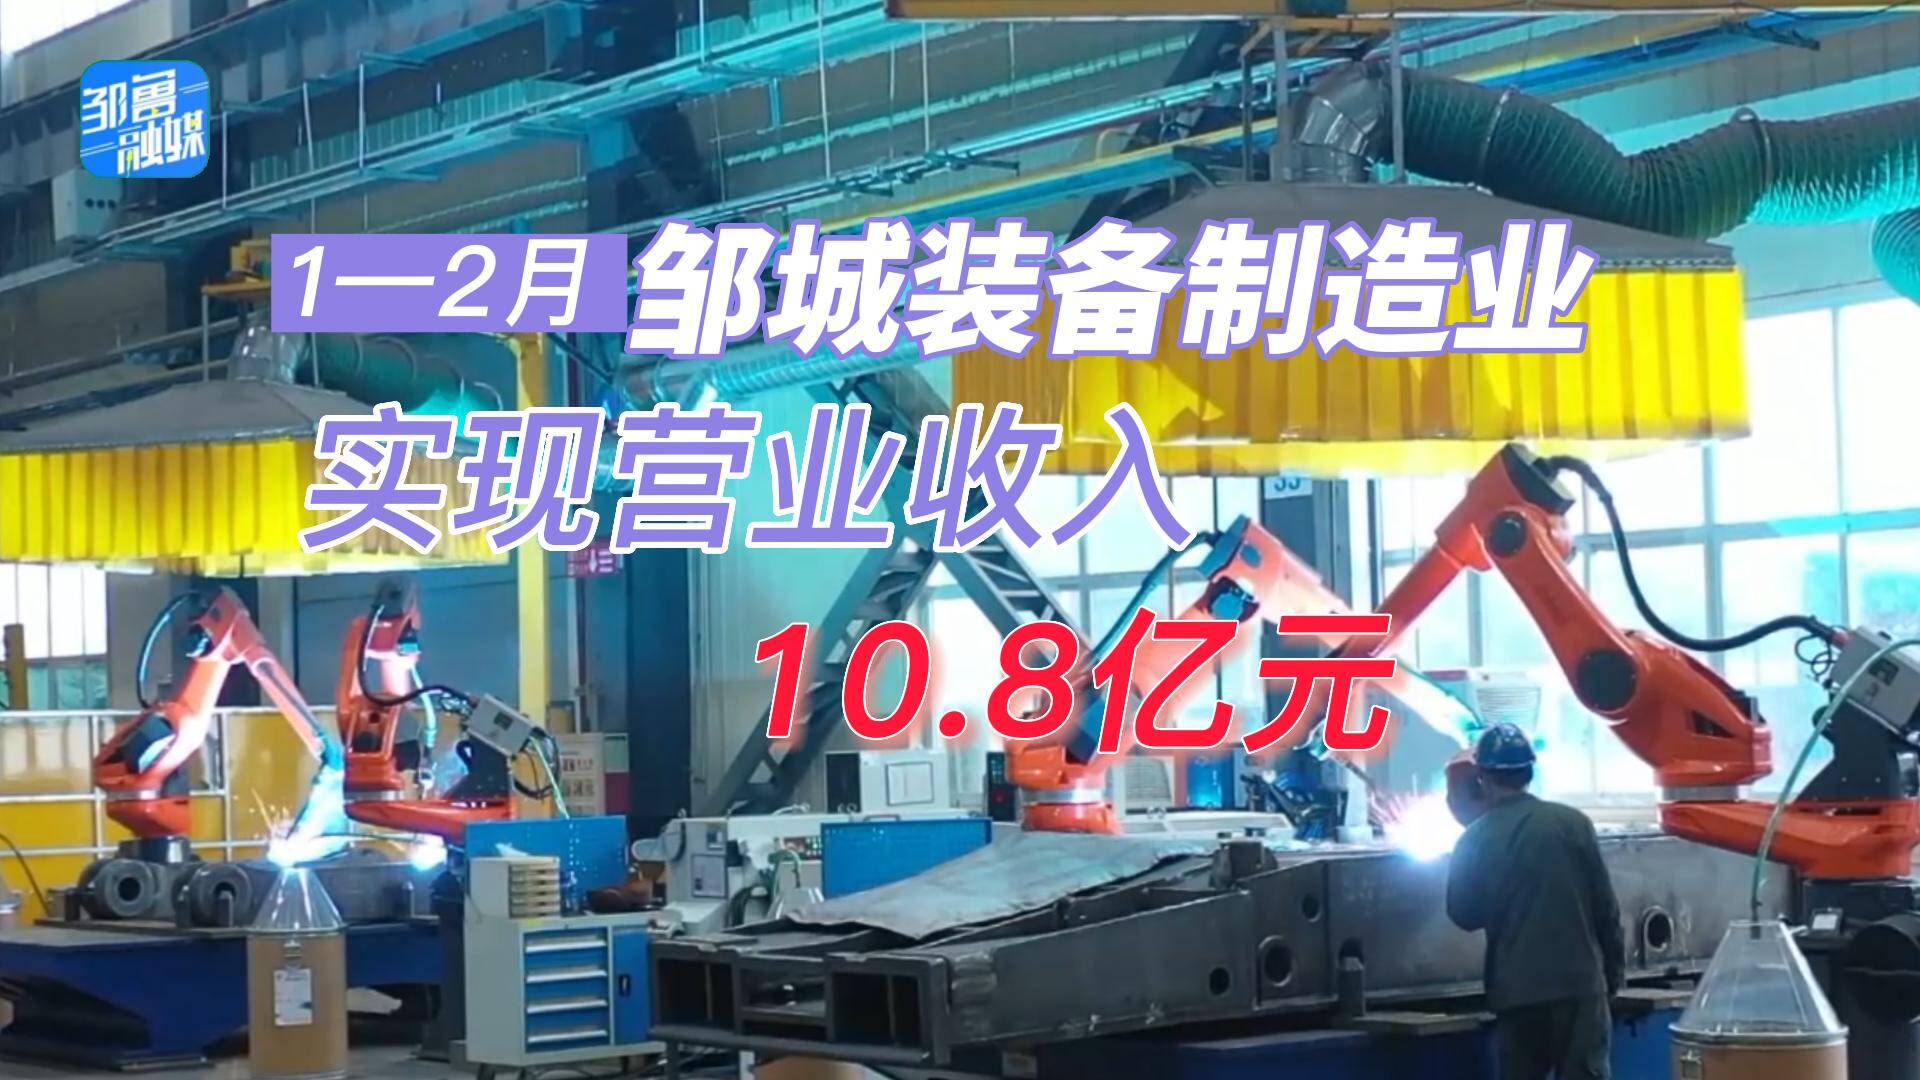 【邹视频·新闻】30秒|1-2月邹城装备制造业实现营业收入10.8亿元